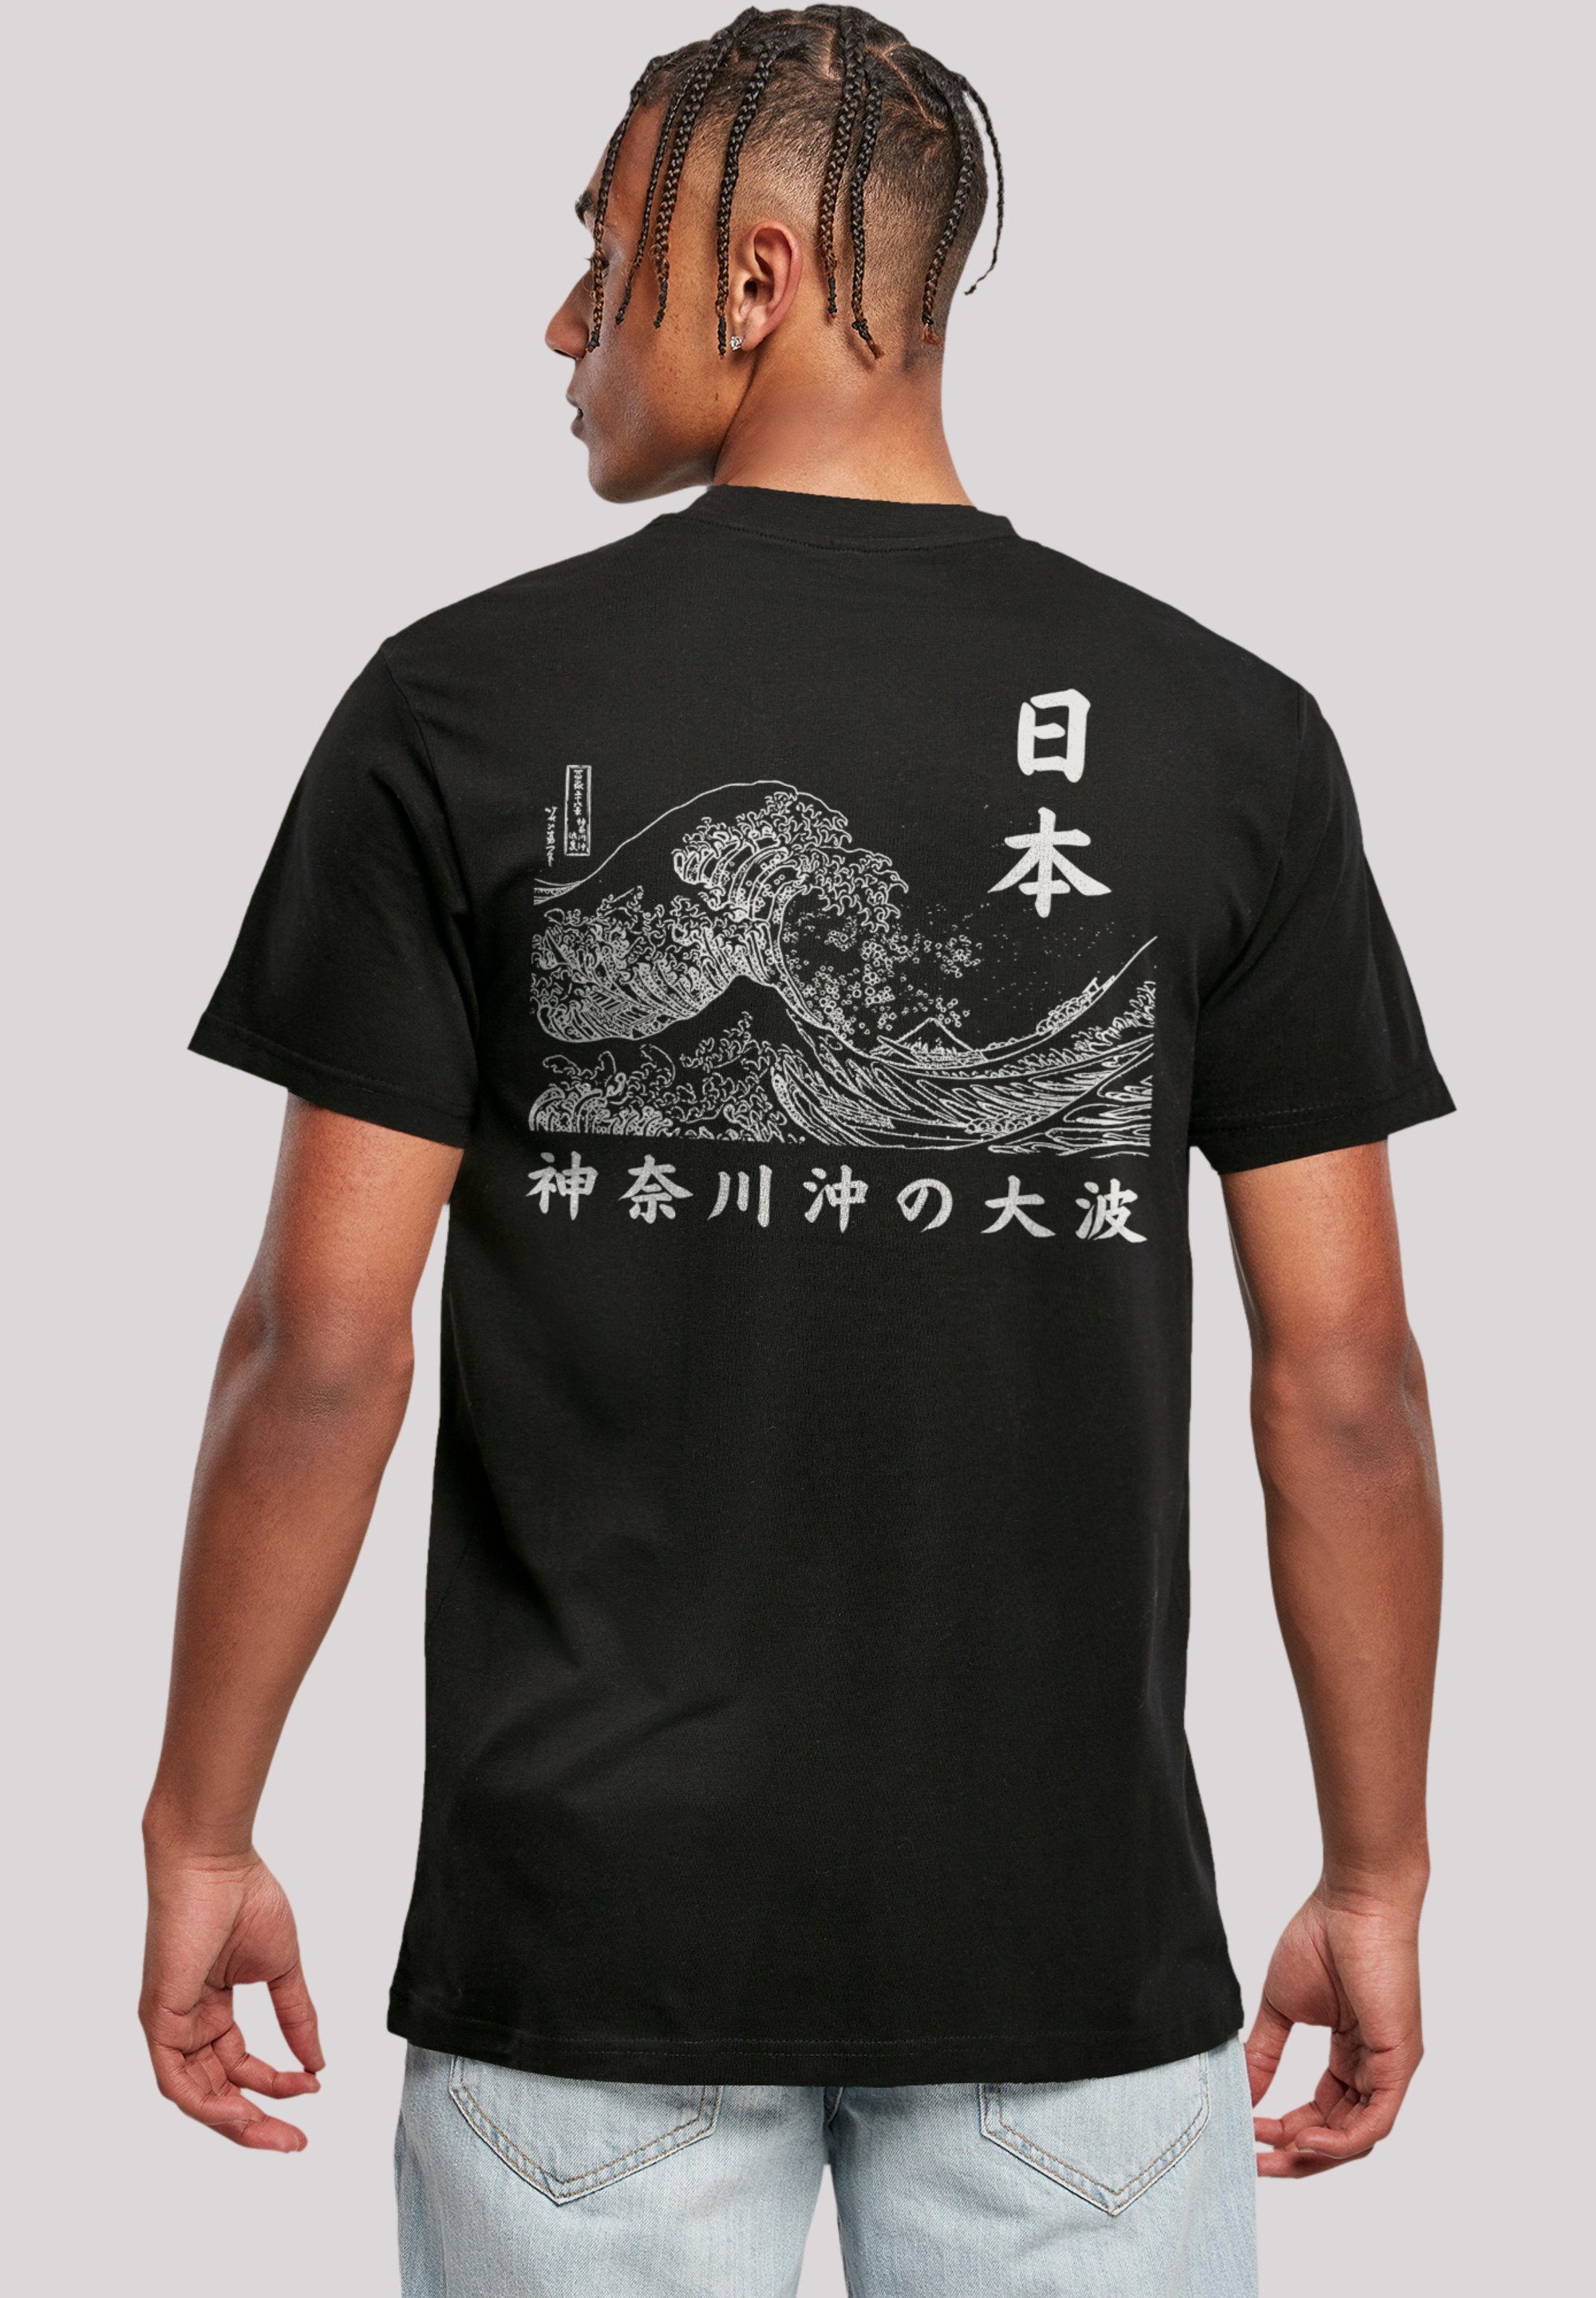 - Kanagawa weicher F4NT4STIC mit Tragekomfort Golden T-Shirt Sehr hohem Gai Print, Baumwollstoff Welle